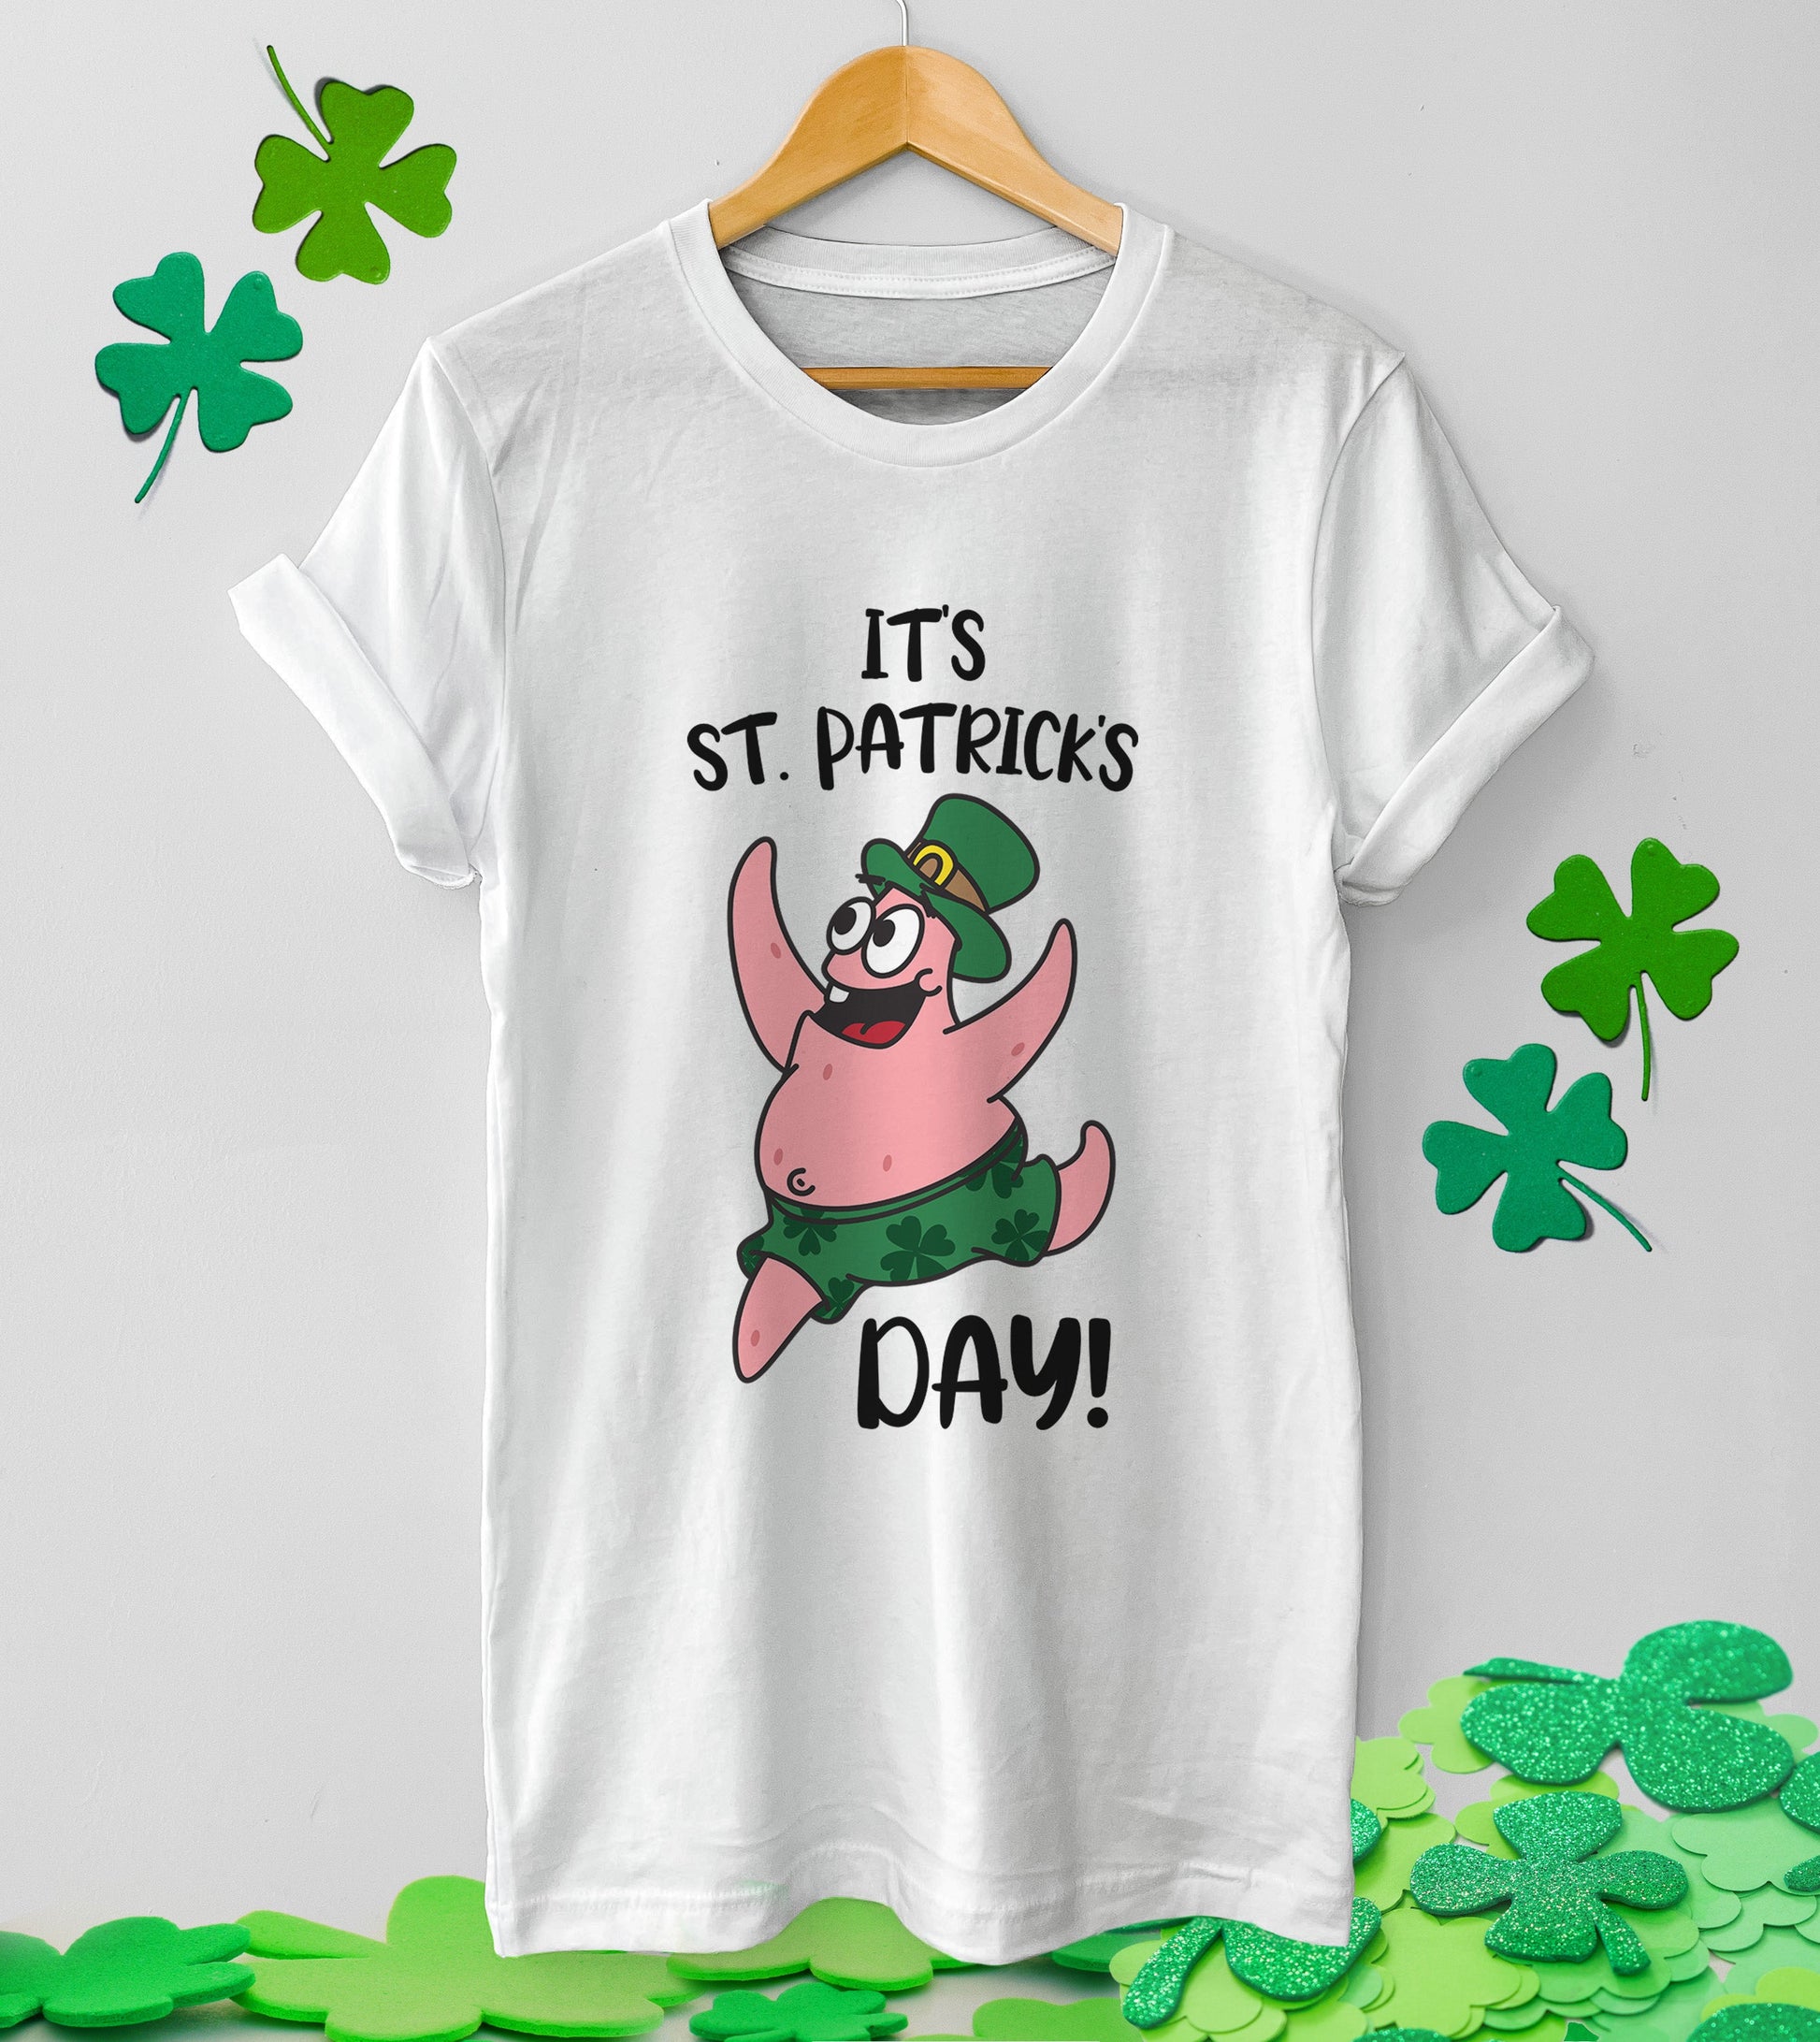 It's St Patrick's Day - Unisex t-shirt